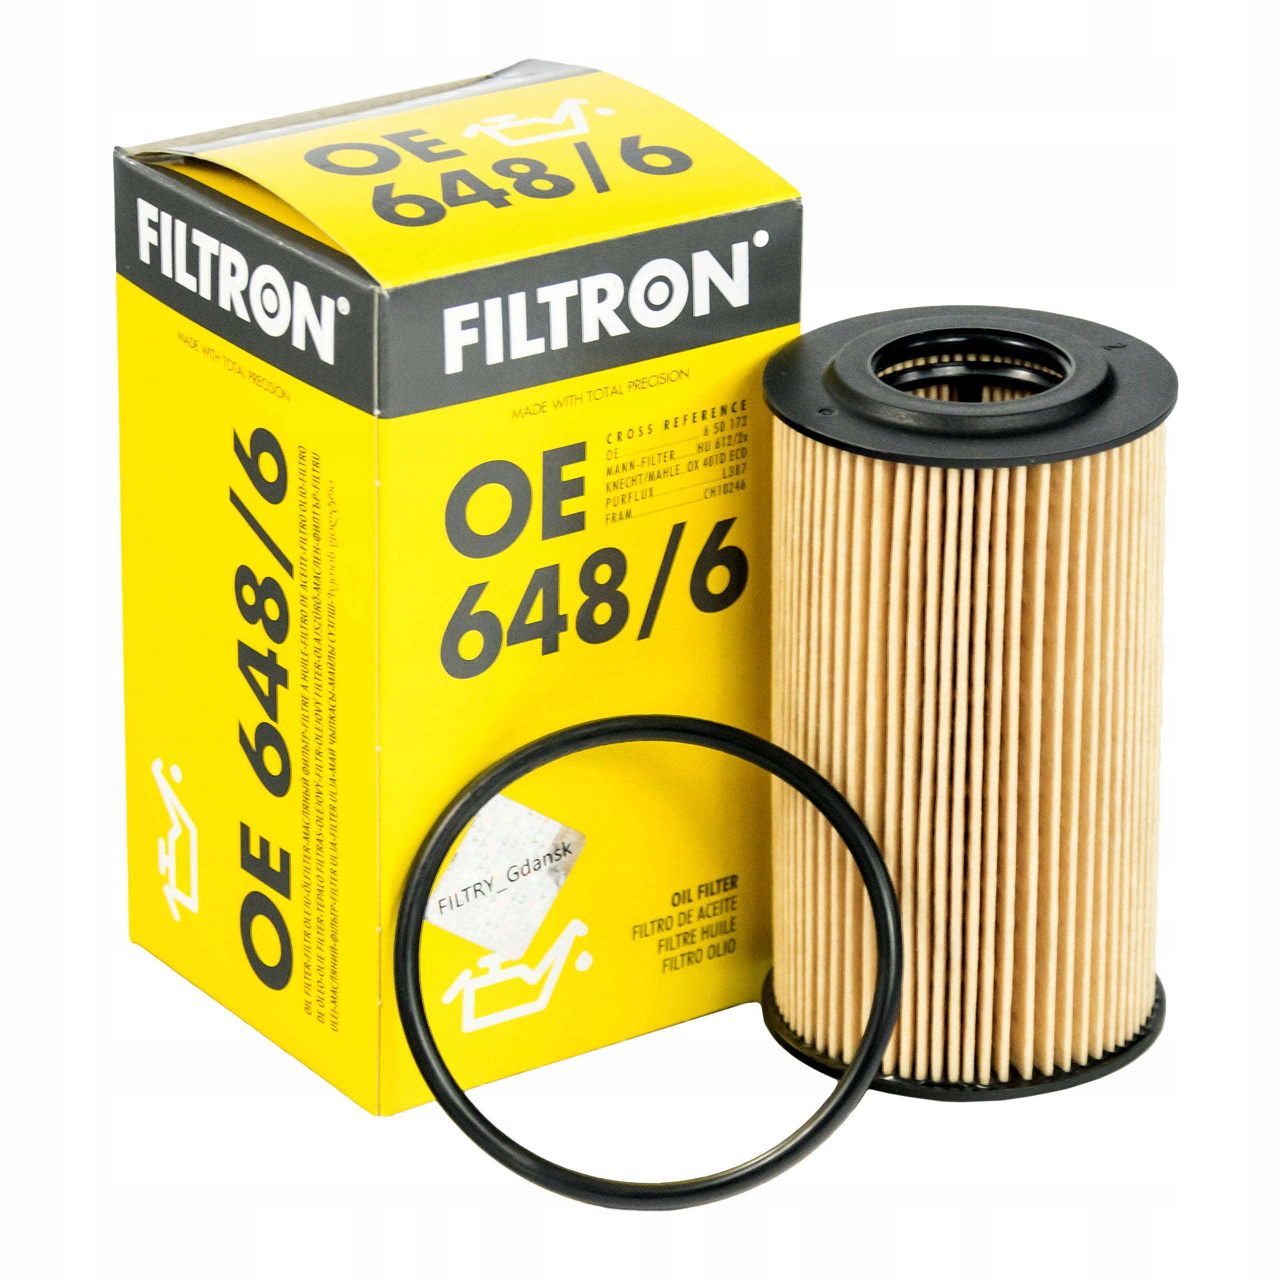 Chevrolet Cruze 1.6 Yağ Filtresi Filtron FILTRON Marka 43